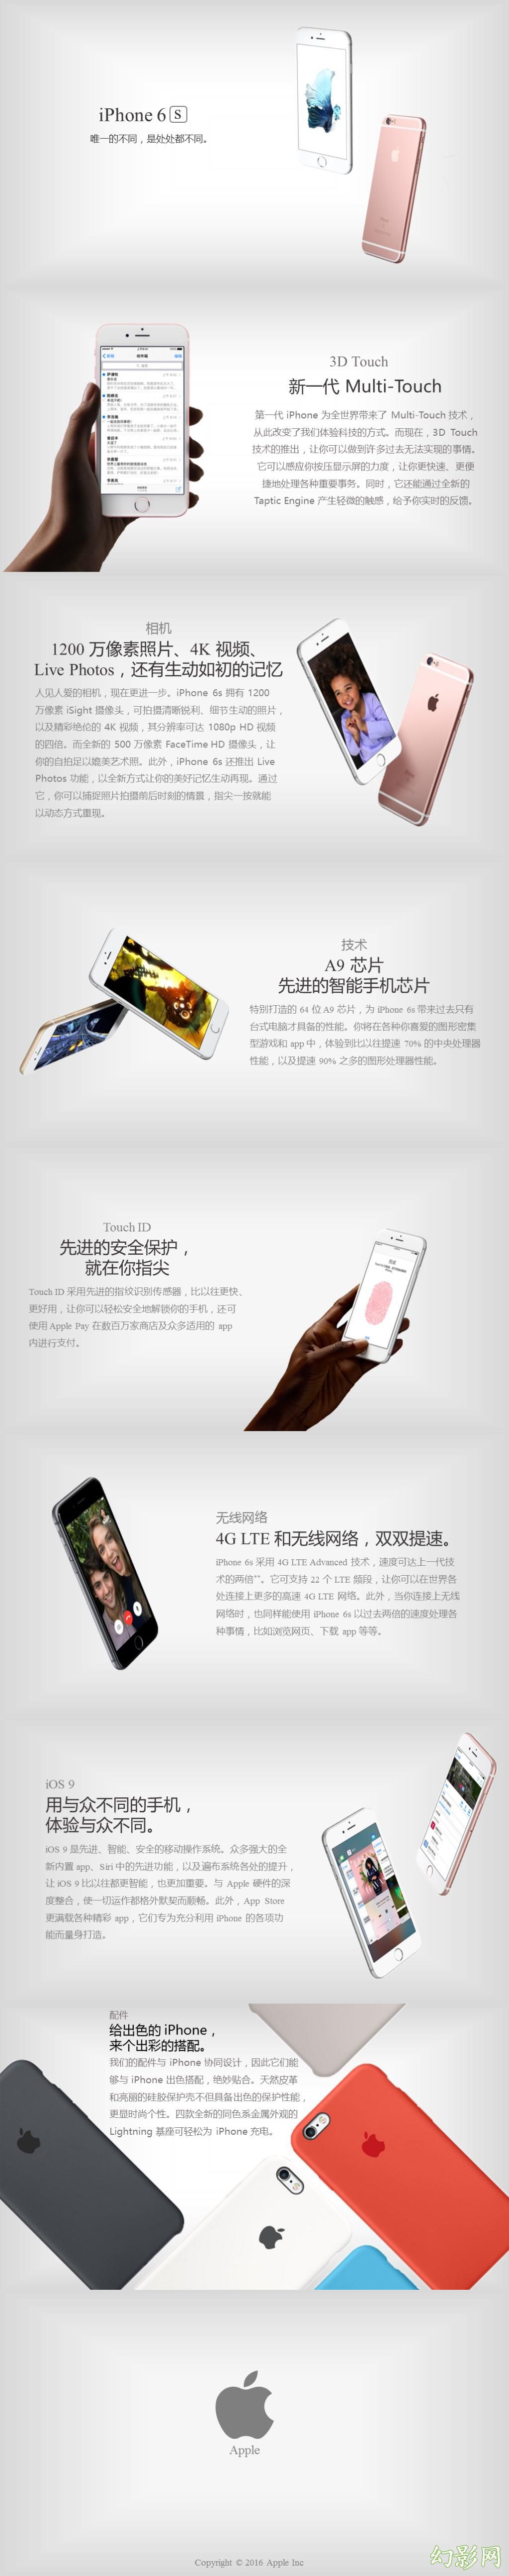 iphone发布会商业推广品牌宣传精美模板